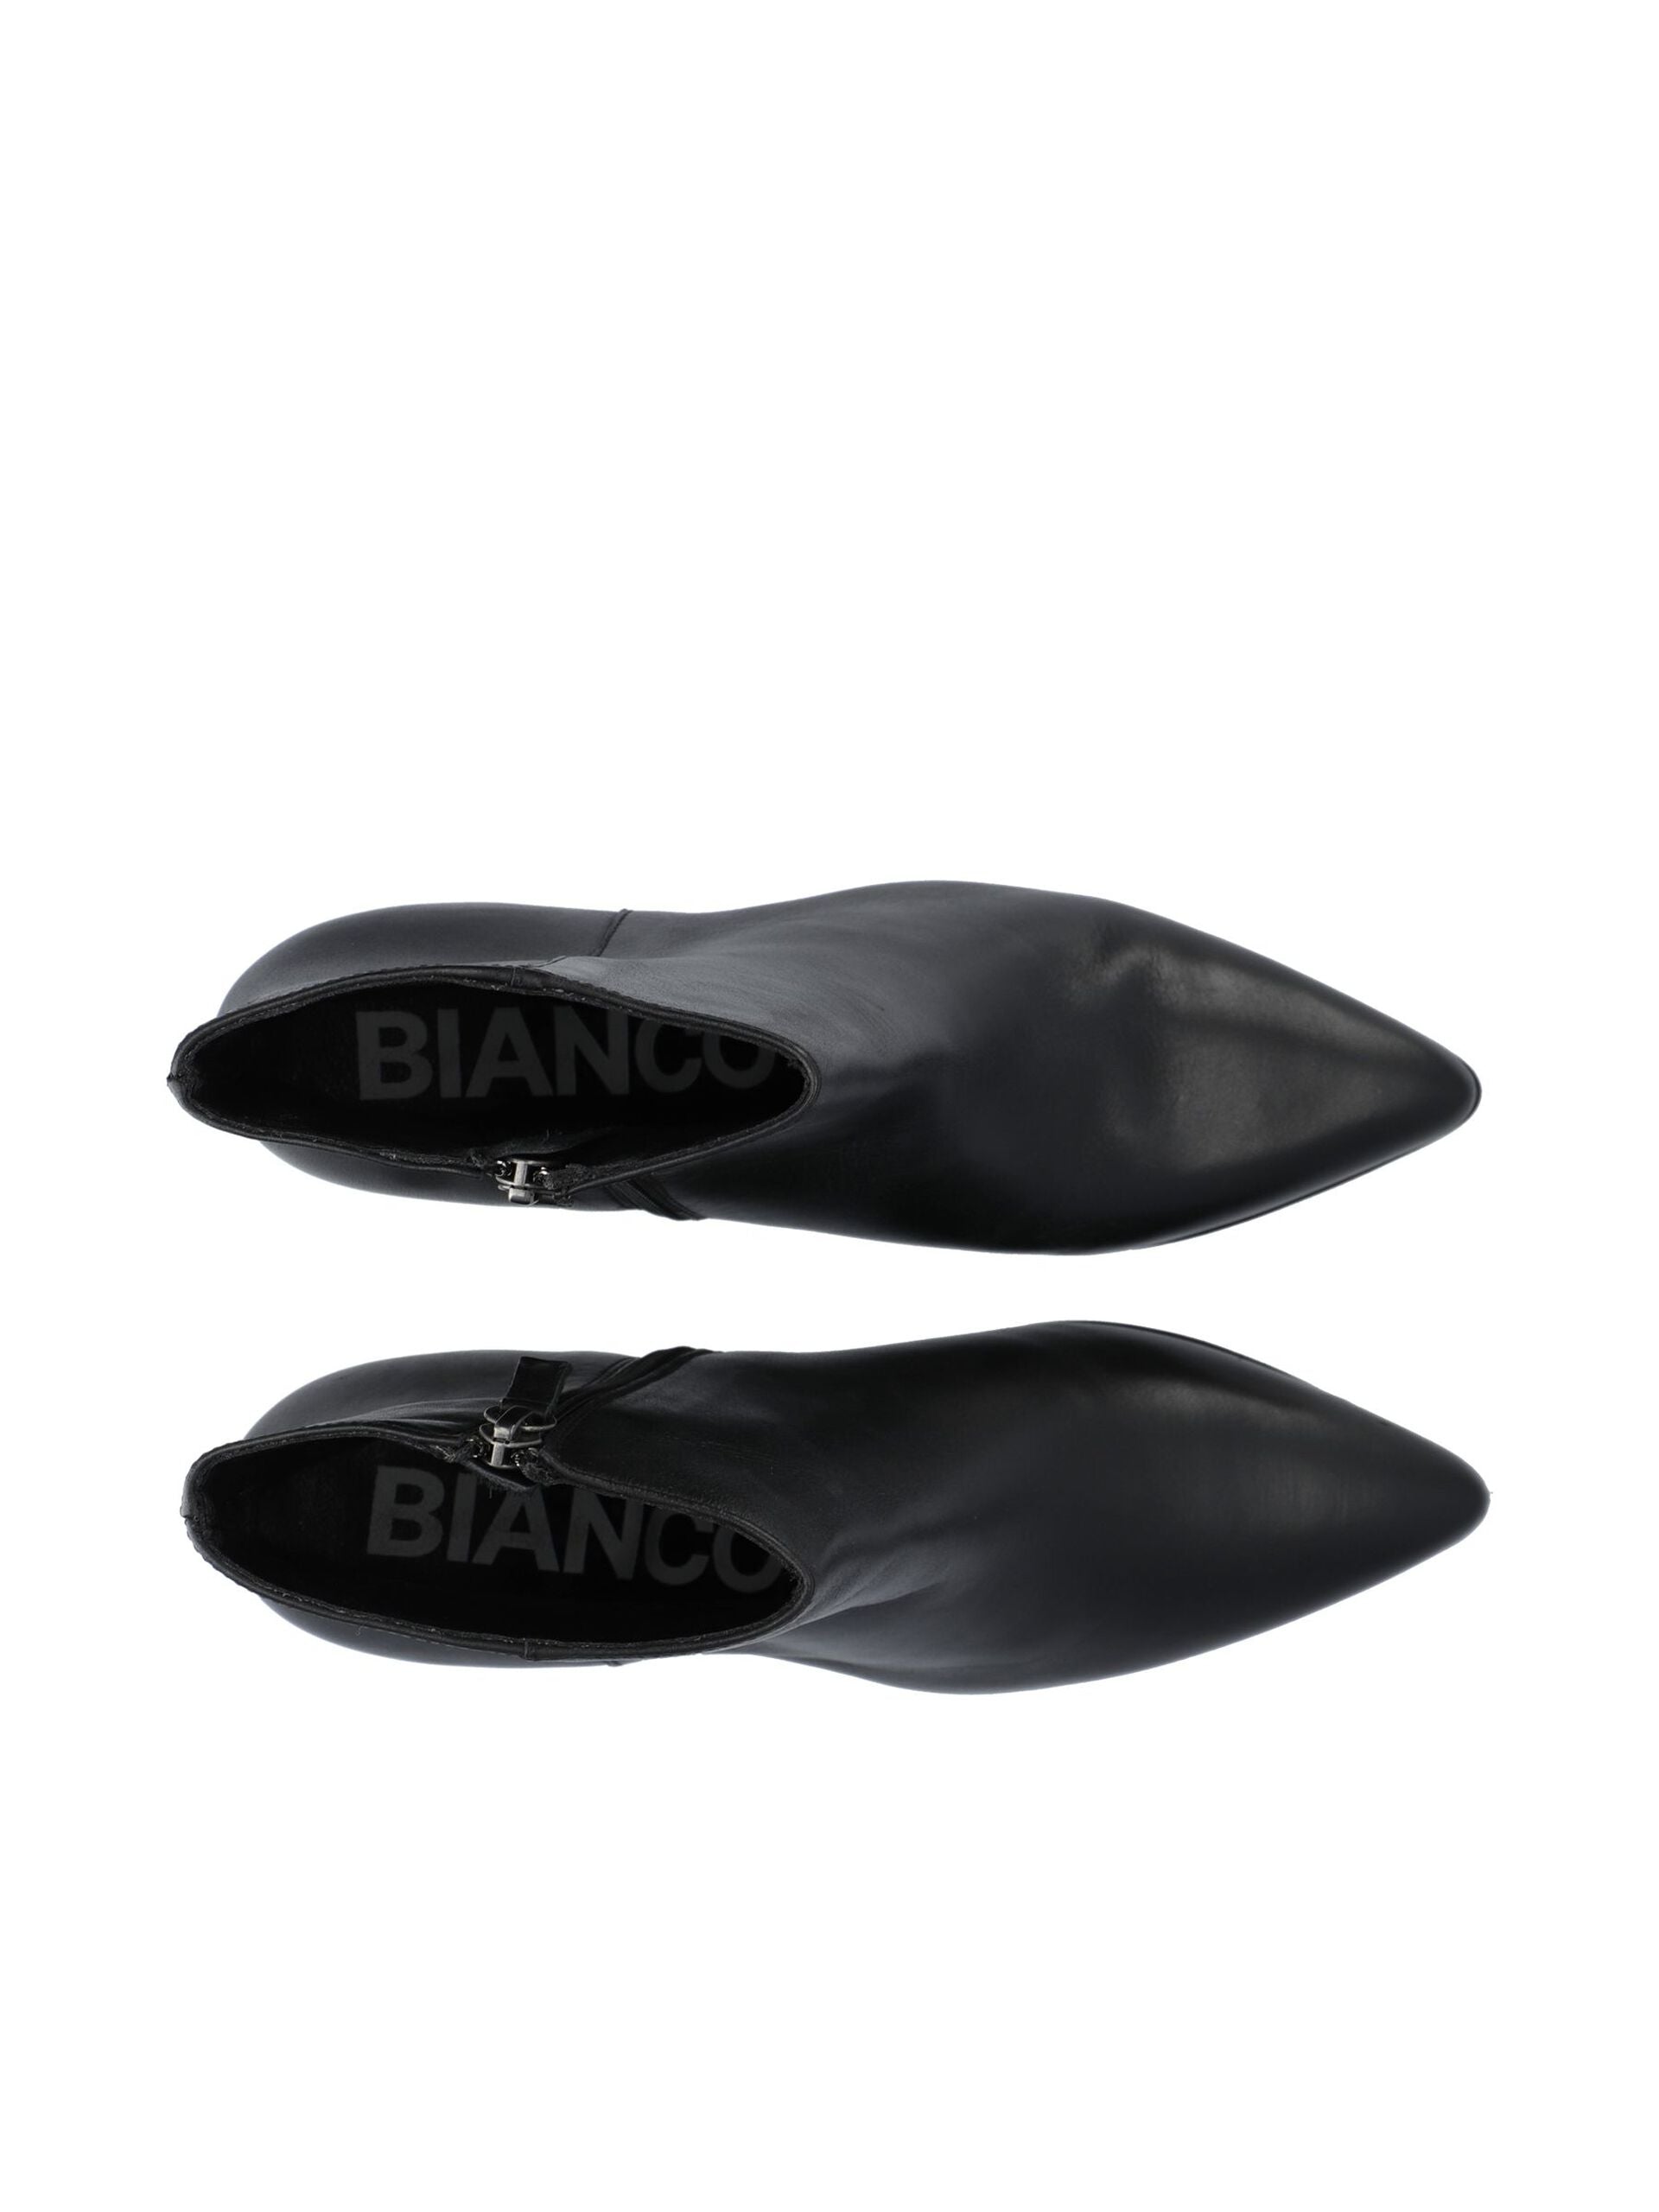 Biacille støvle fra Bianco